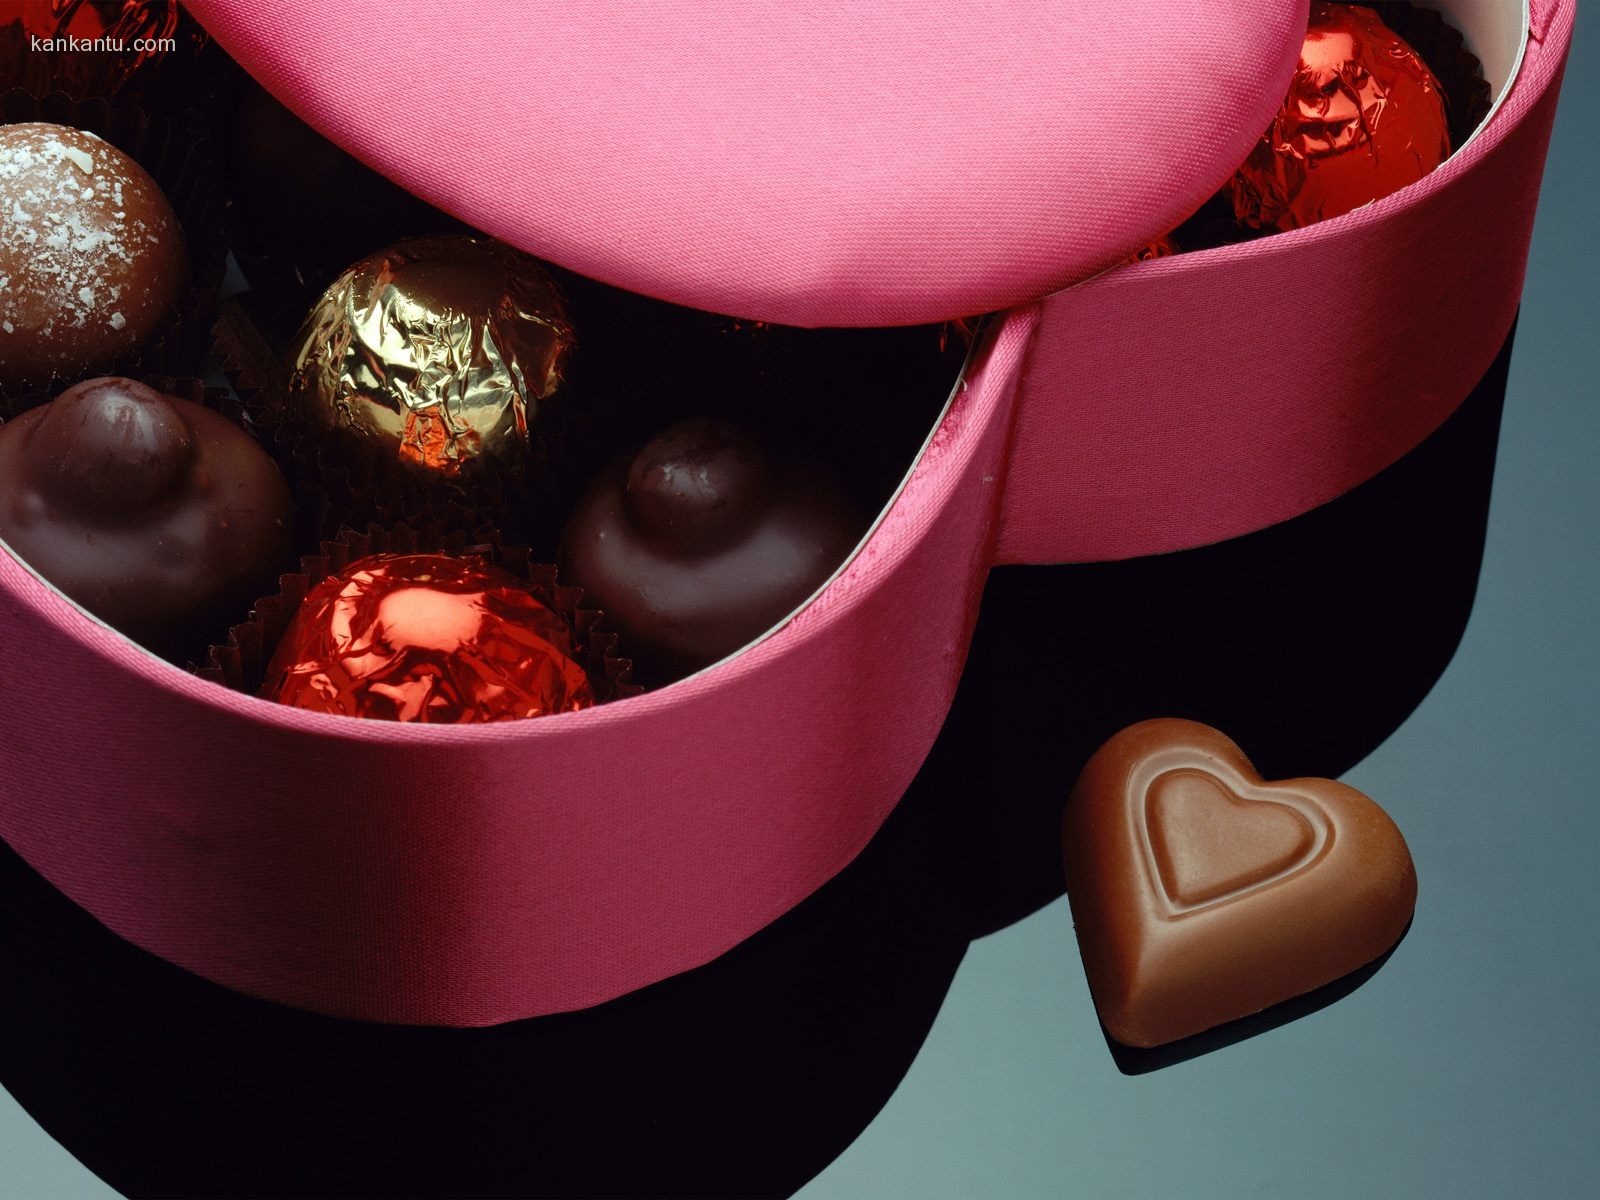 Le indélébile Saint Valentin au chocolat #2 - 1600x1200